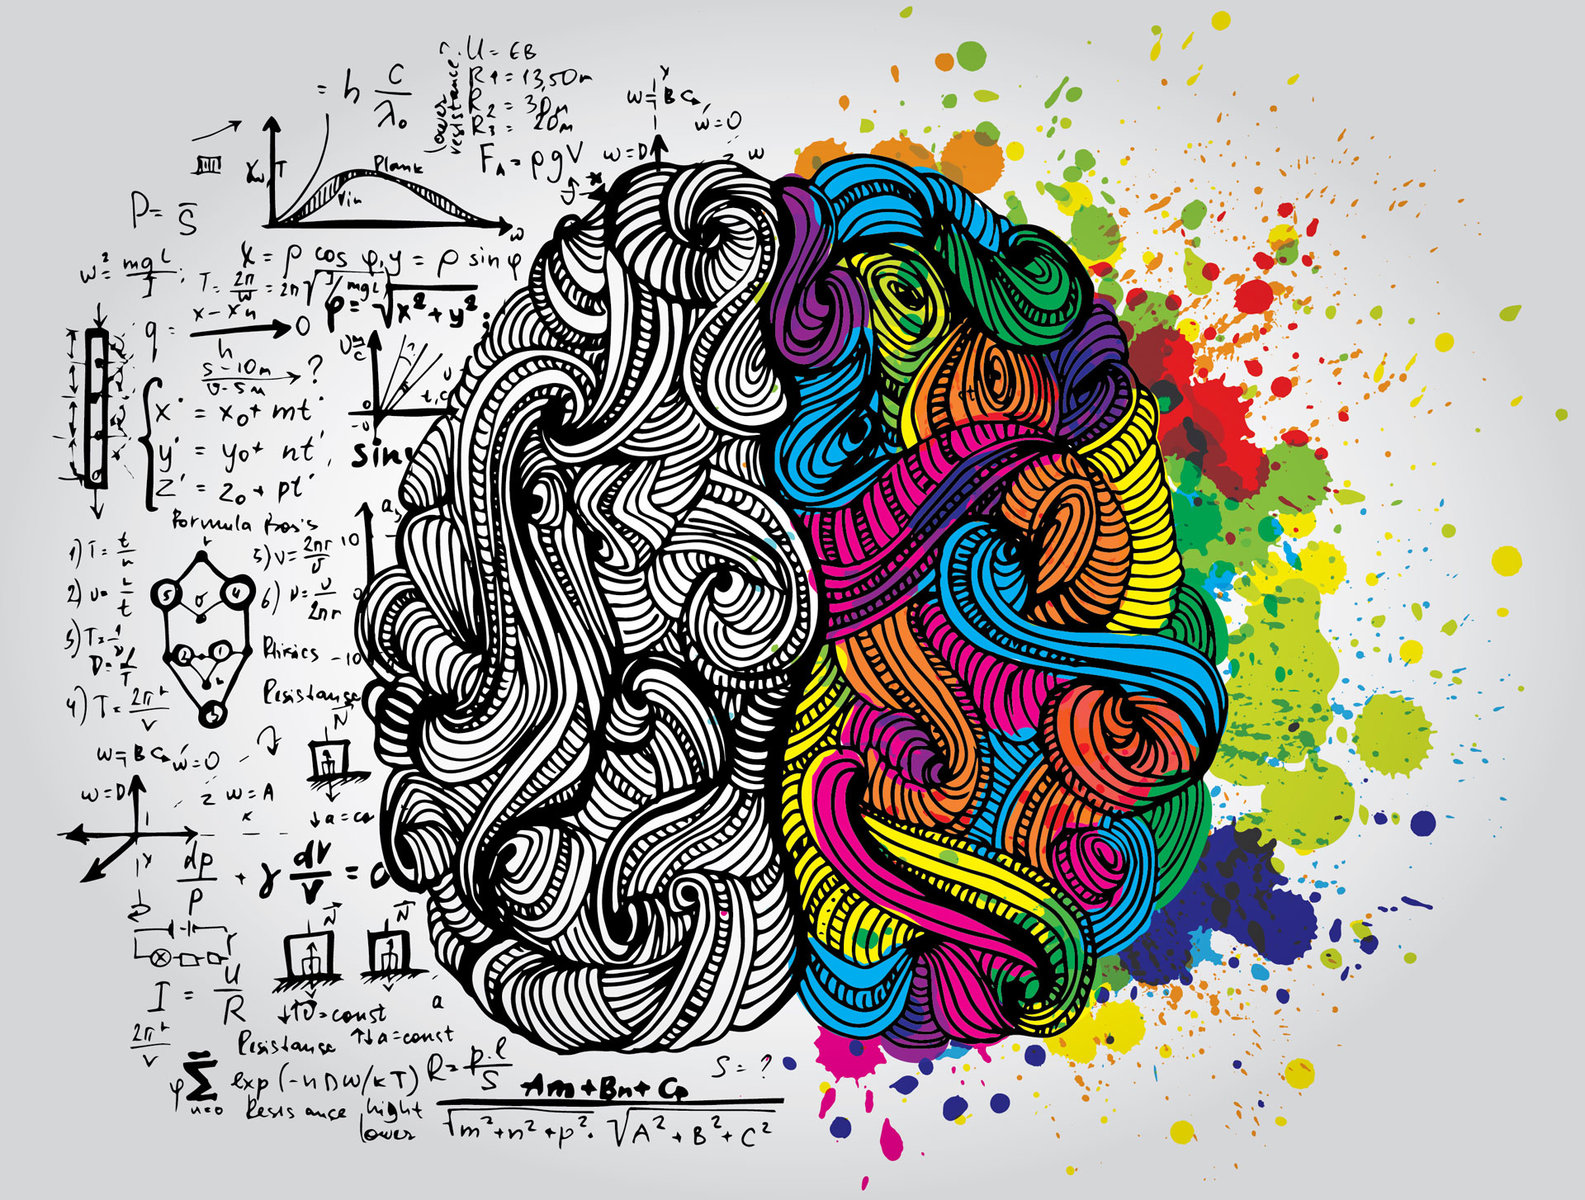 7 διαφορές μεταξύ των ανθρώπων που σκέφτονται με το δεξί ή το αριστερό μέρος του εγκεφάλου τους